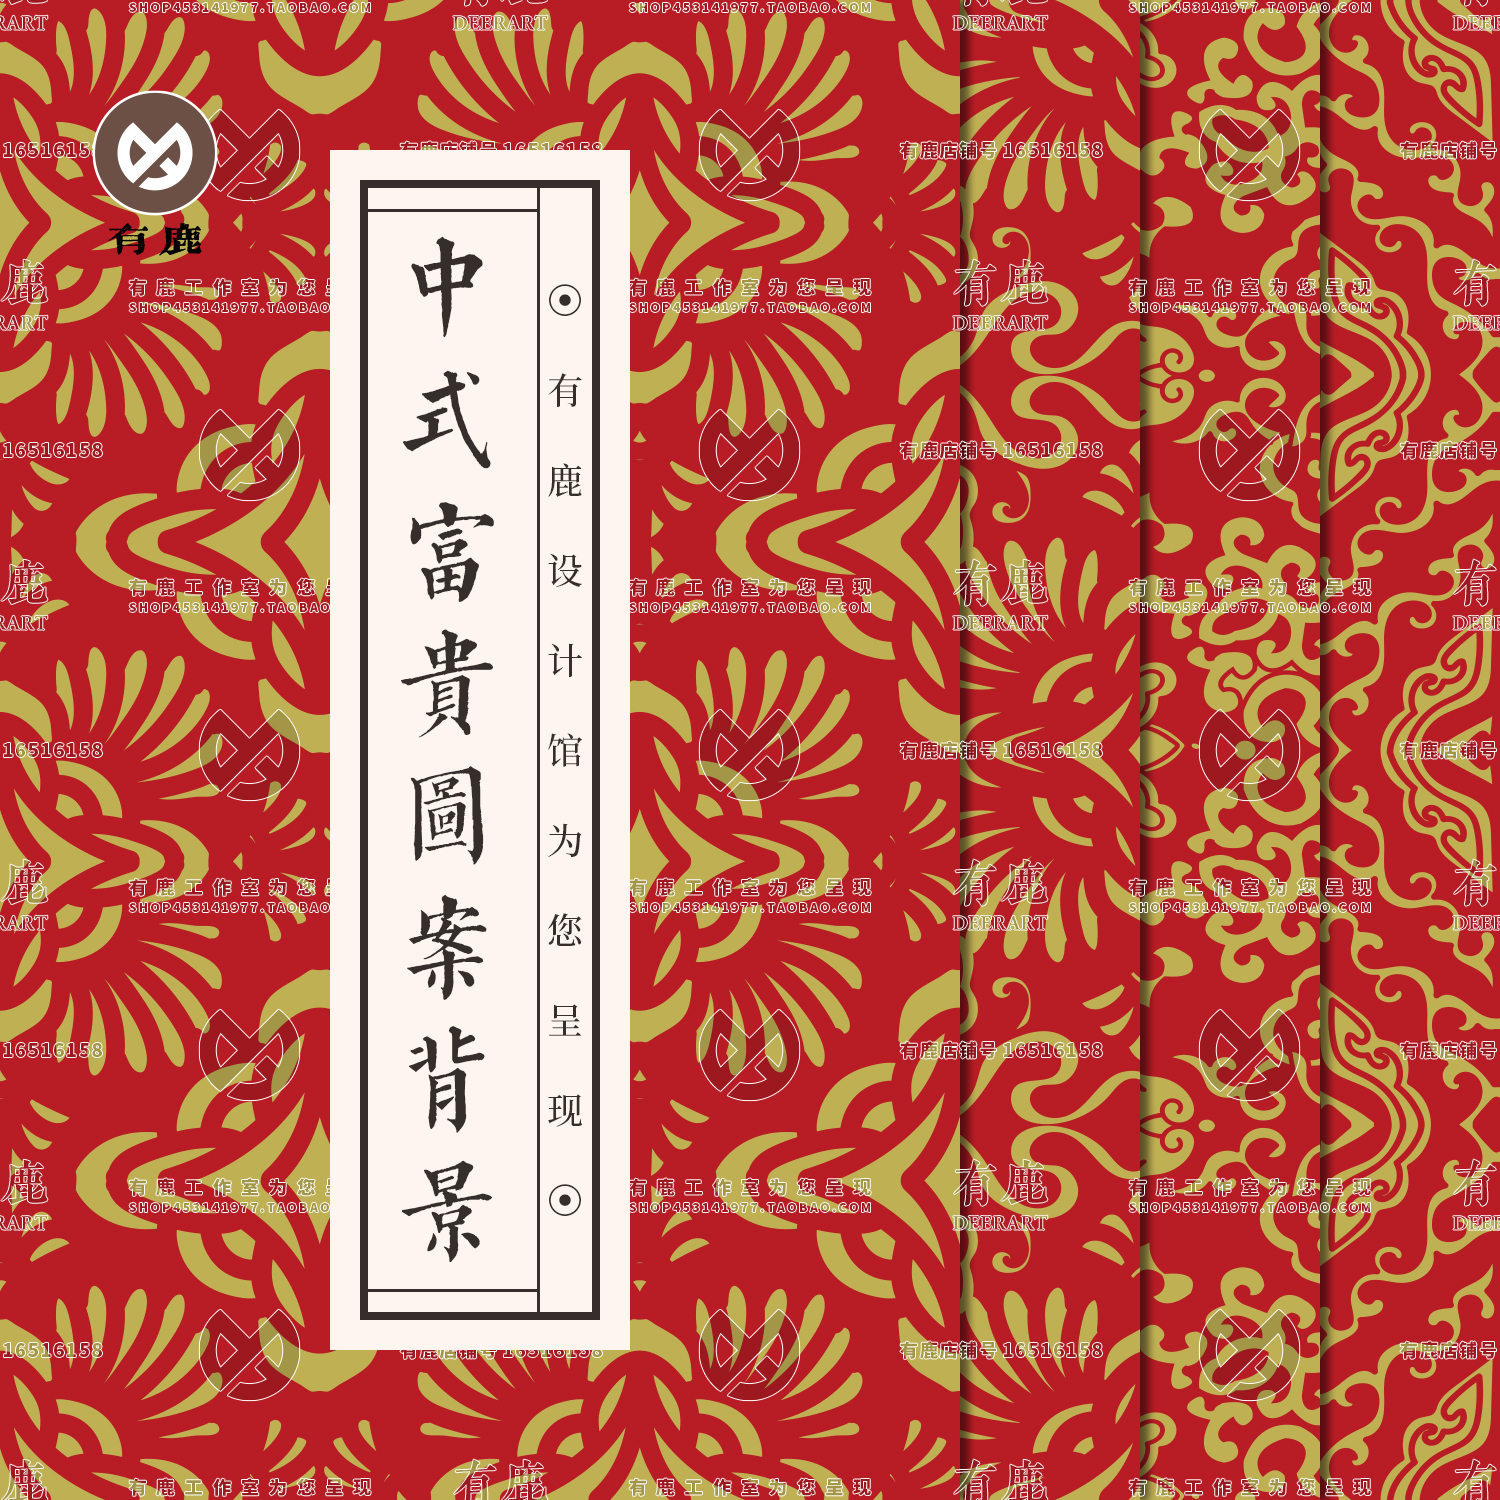 中国风中式喜庆新年春节红包装设计底纹平面印刷矢量背景素材图片